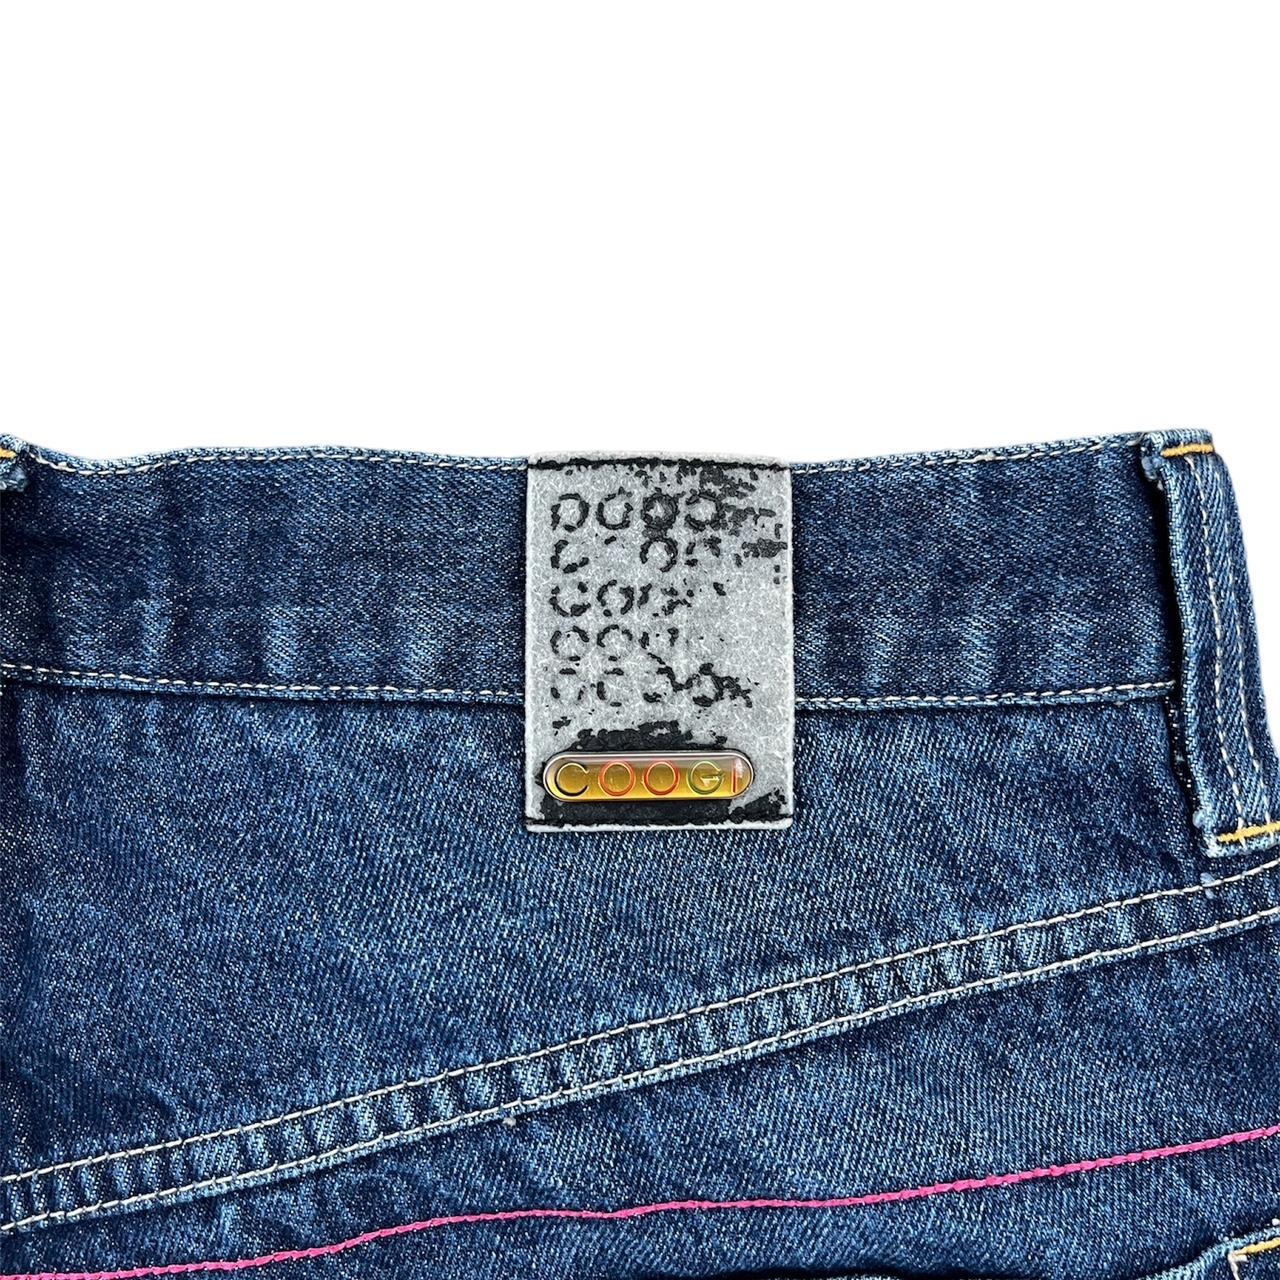 COOGI Vintage Denim Shorts Measurements: Size Tag:... - Depop